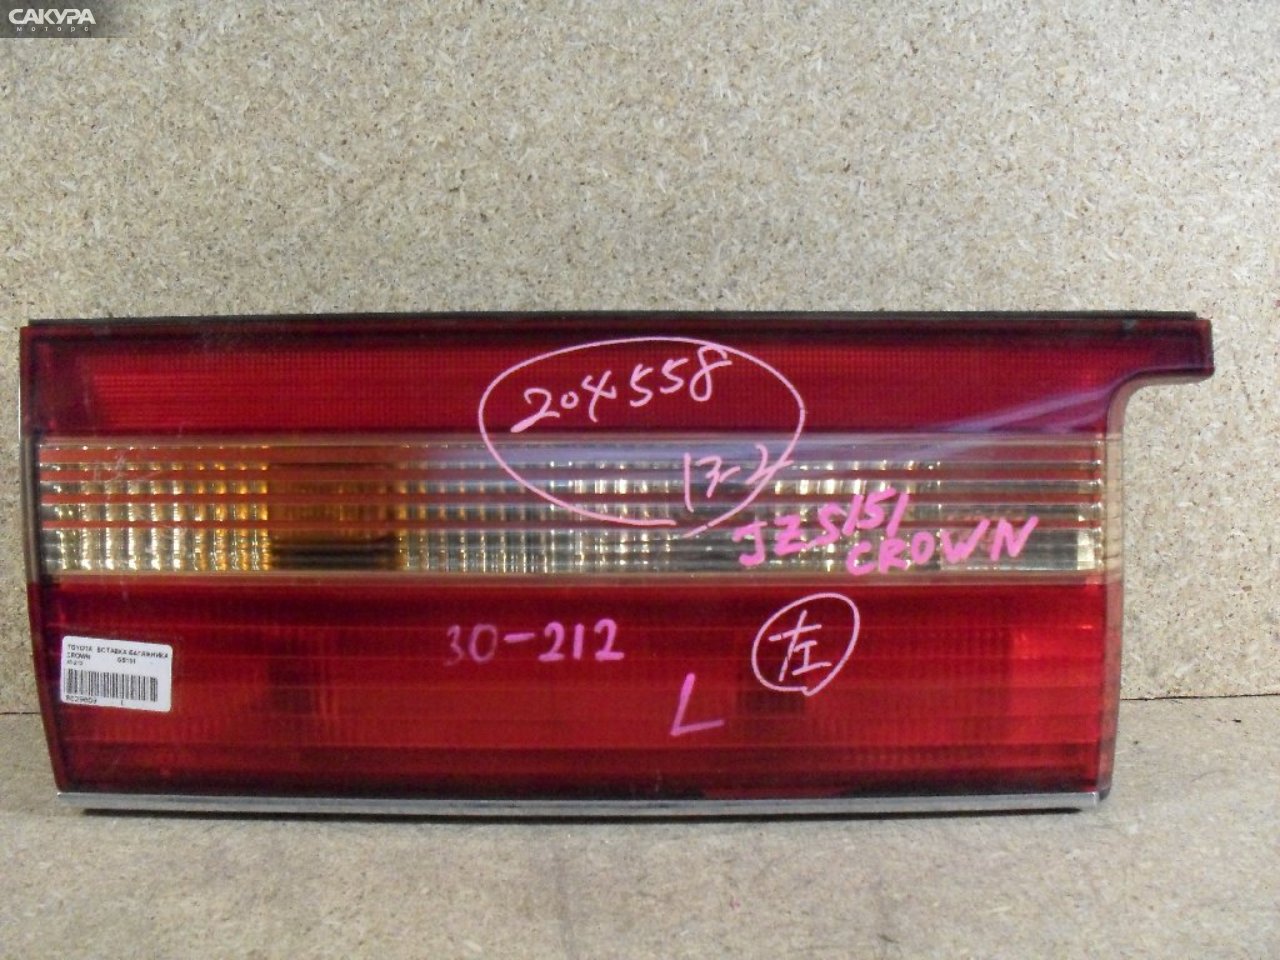 Фонарь вставка багажника левый Toyota Crown GS151 30-212: купить в Сакура Абакан.